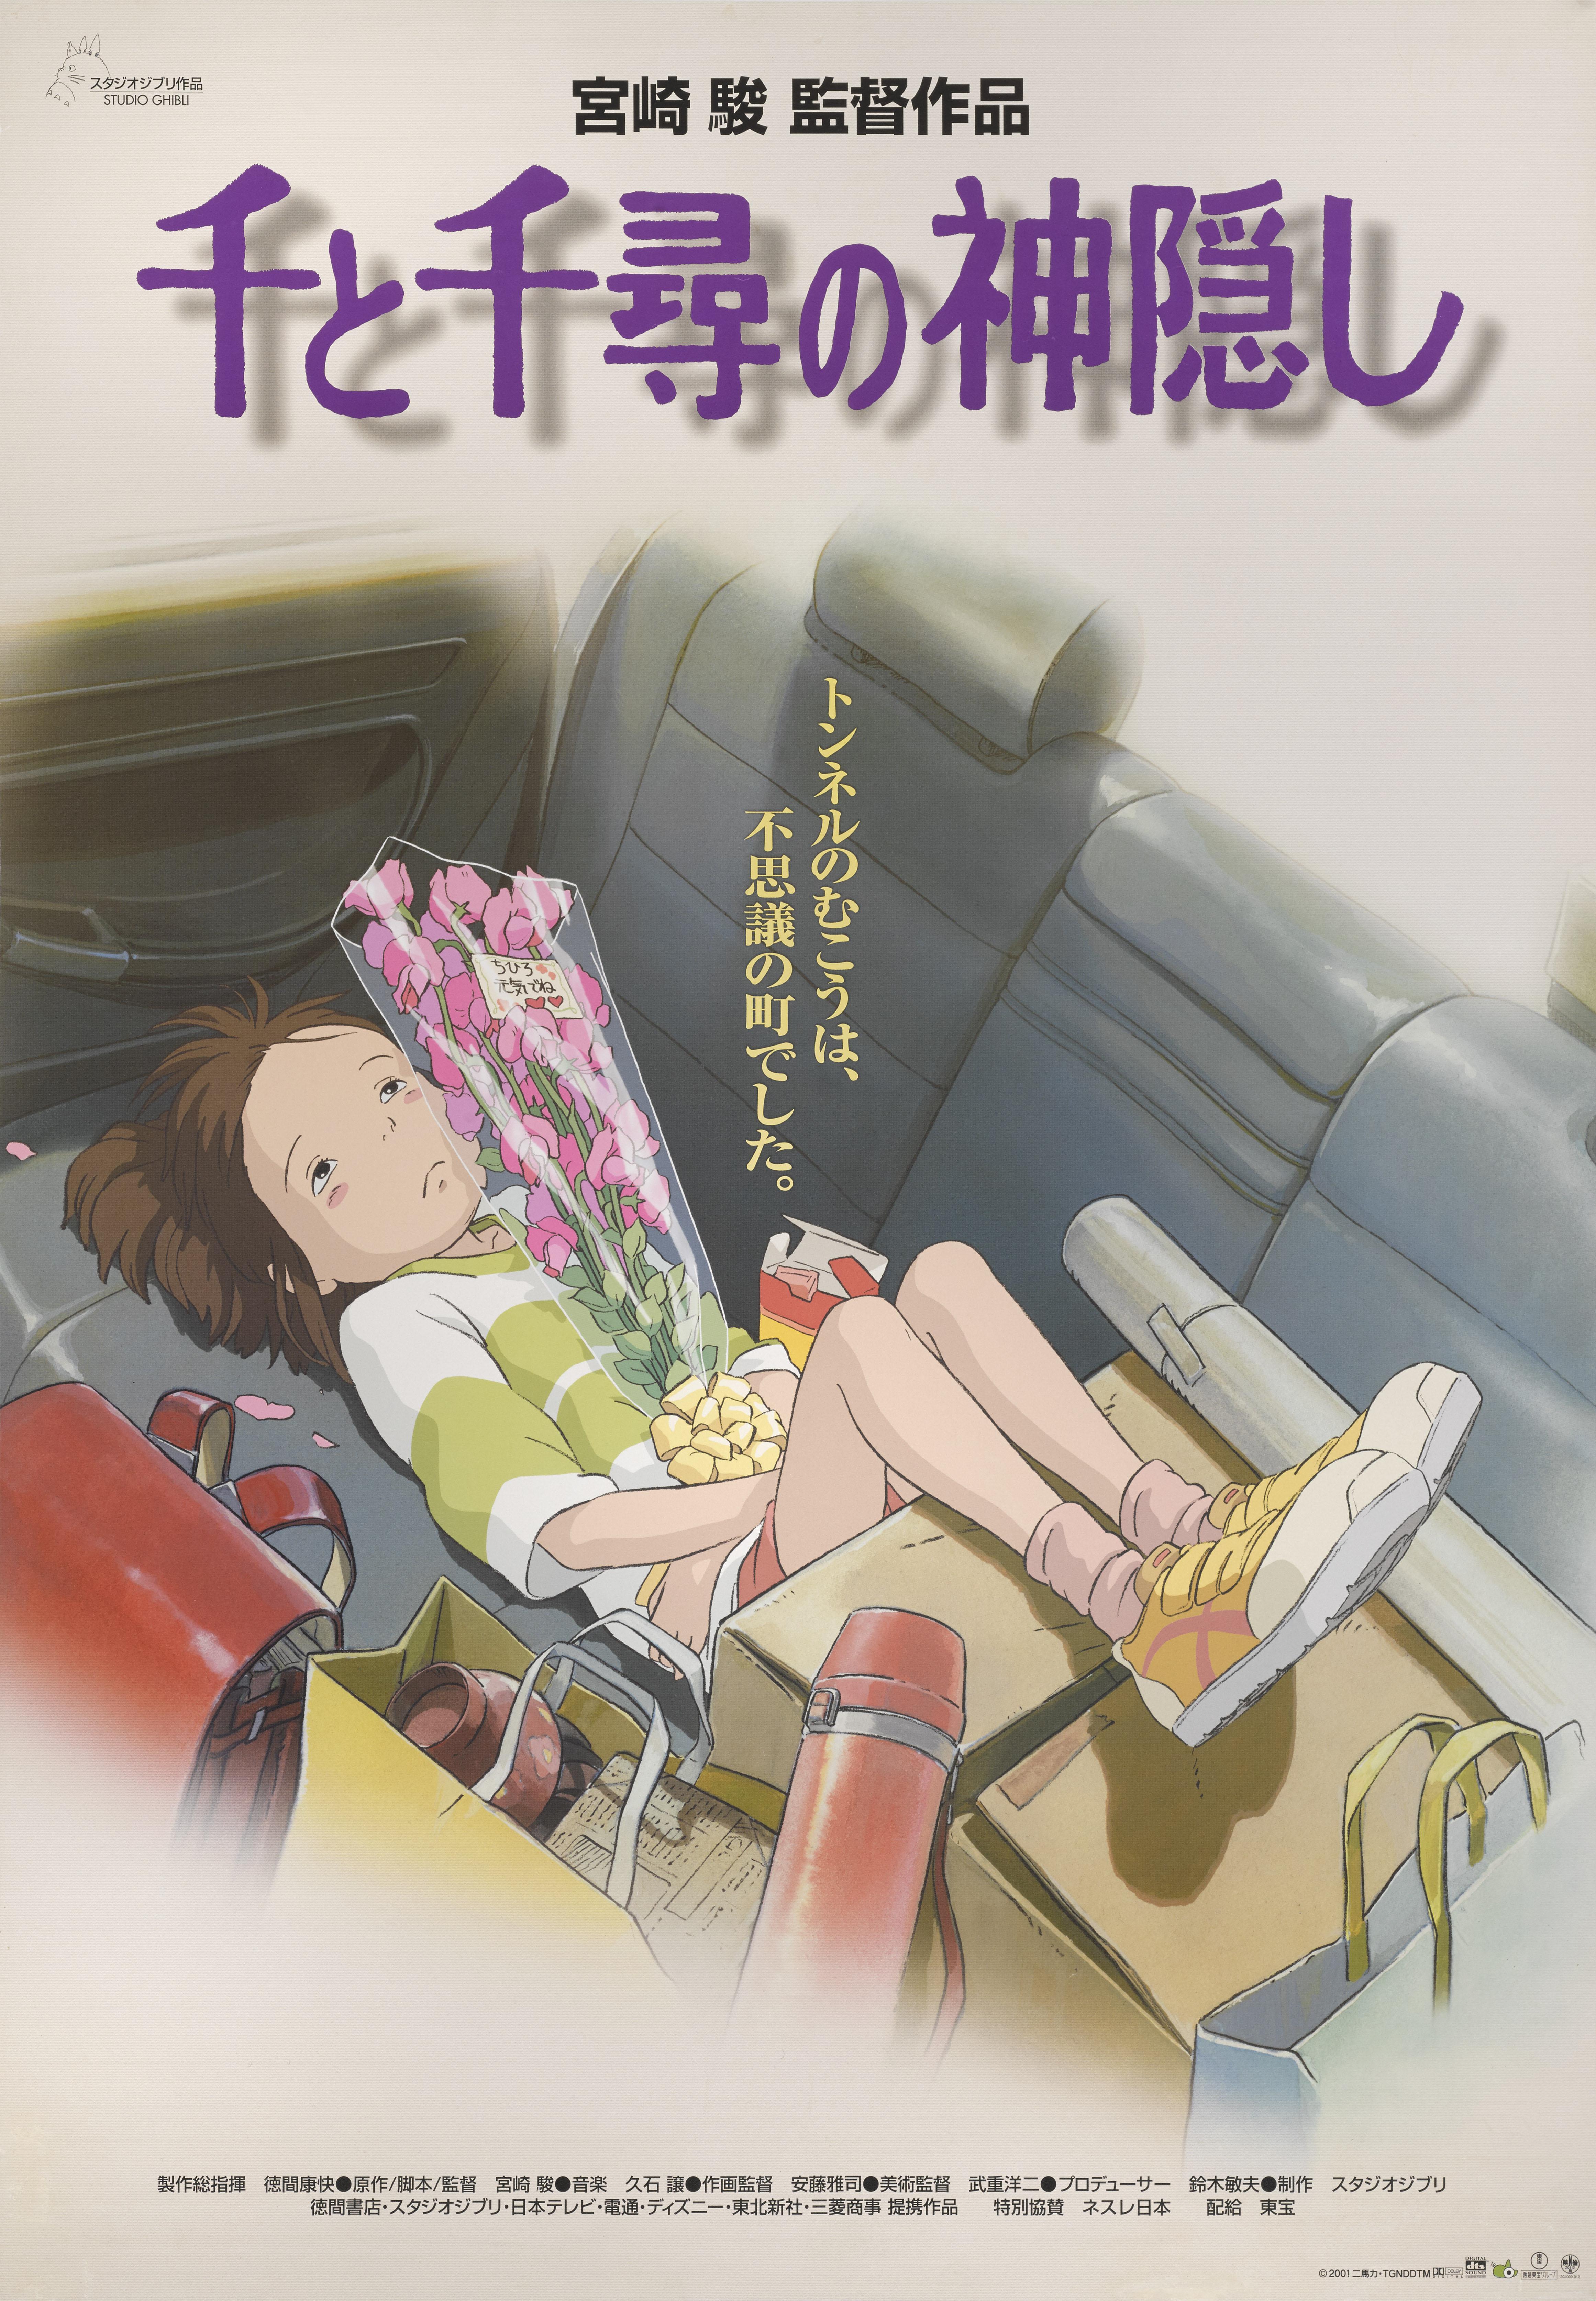 Originales japanisches Filmplakat für den Studio Ghibli-Animationsfilm von 2001 unter der Regie von Hayao Miyazaki.
Dies ist das japanische Poster im Vorab-Stil und zeigt ein anderes Artwork als alle anderen Poster zu diesem Titel.
Dieses Plakat